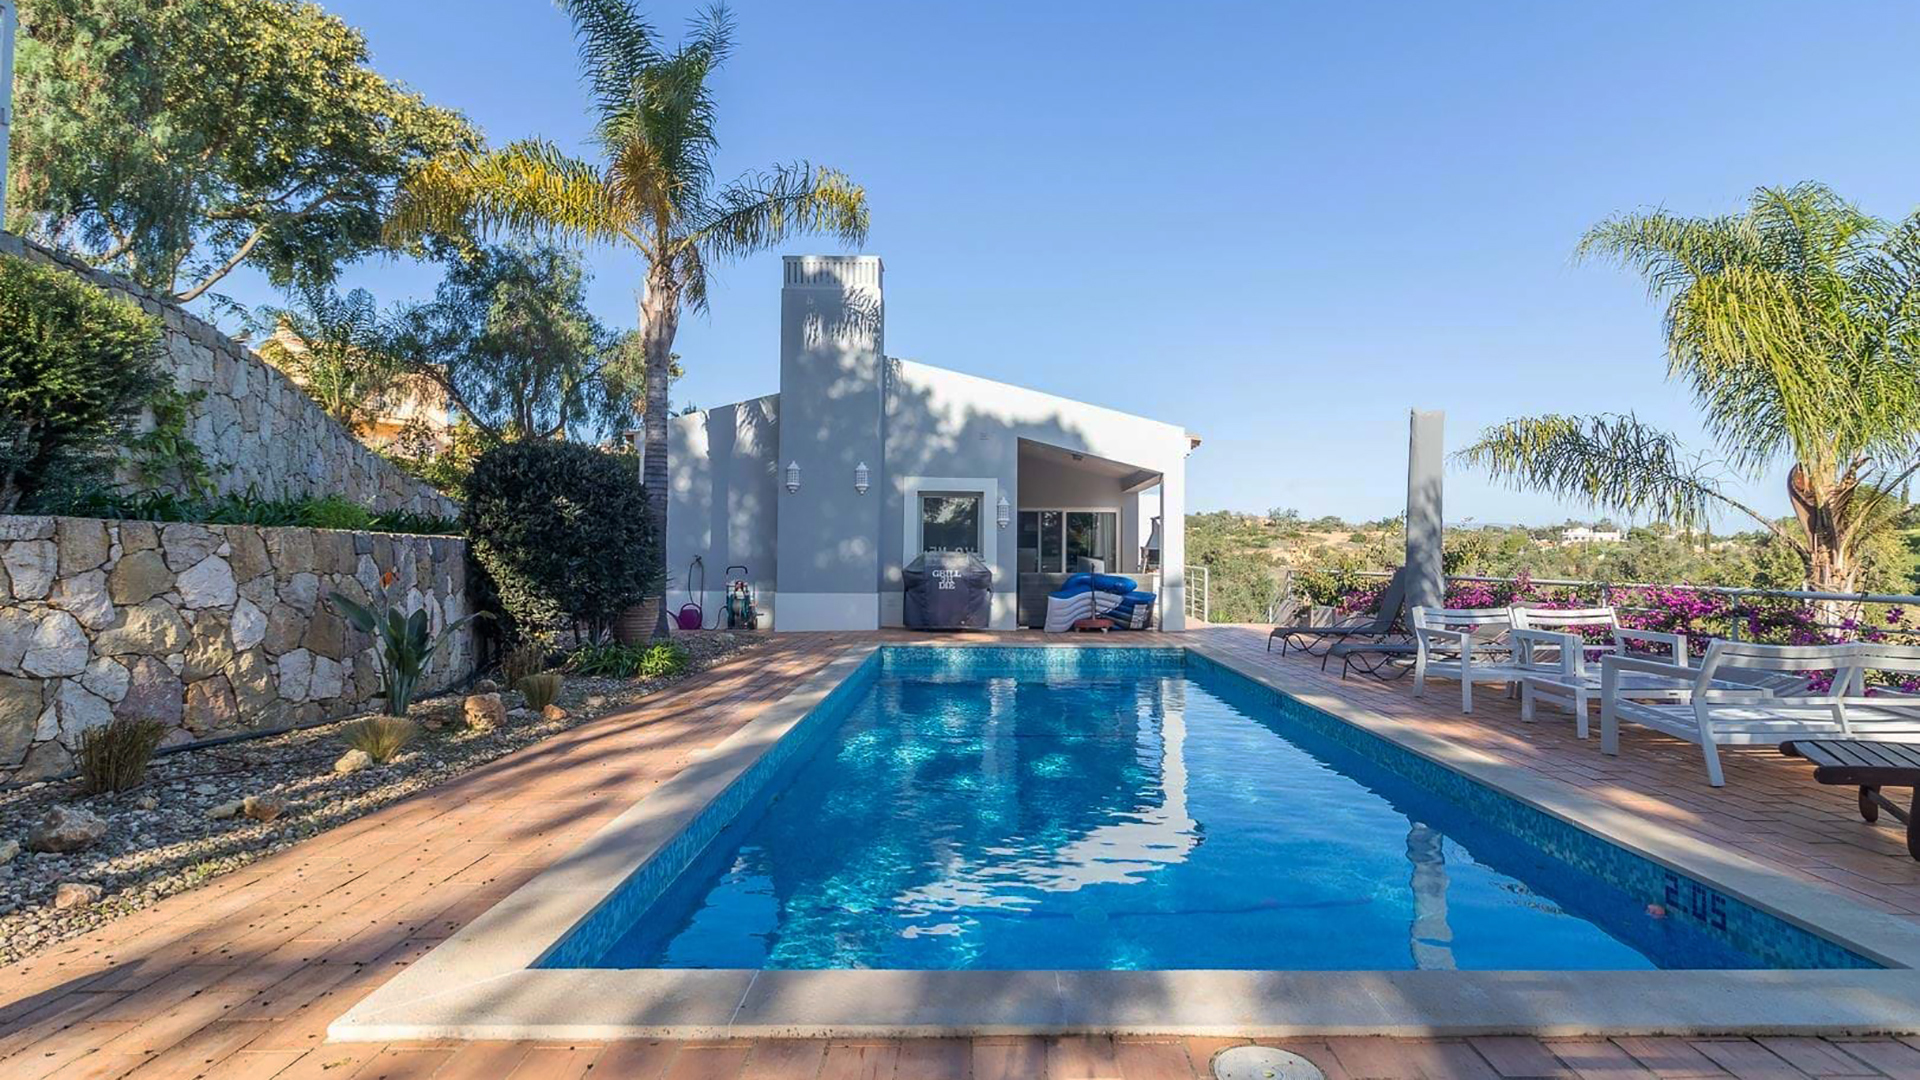 Moradia V3 recentemente renovada com piscina em resort de golfe perto de Carvoeiro, Barlavento | PCG2053 Moradia de 3 quartos, 4 casas de banho com piscina, rodeada por um jardim bem cuidado num popular resort de golfe no Algarve.